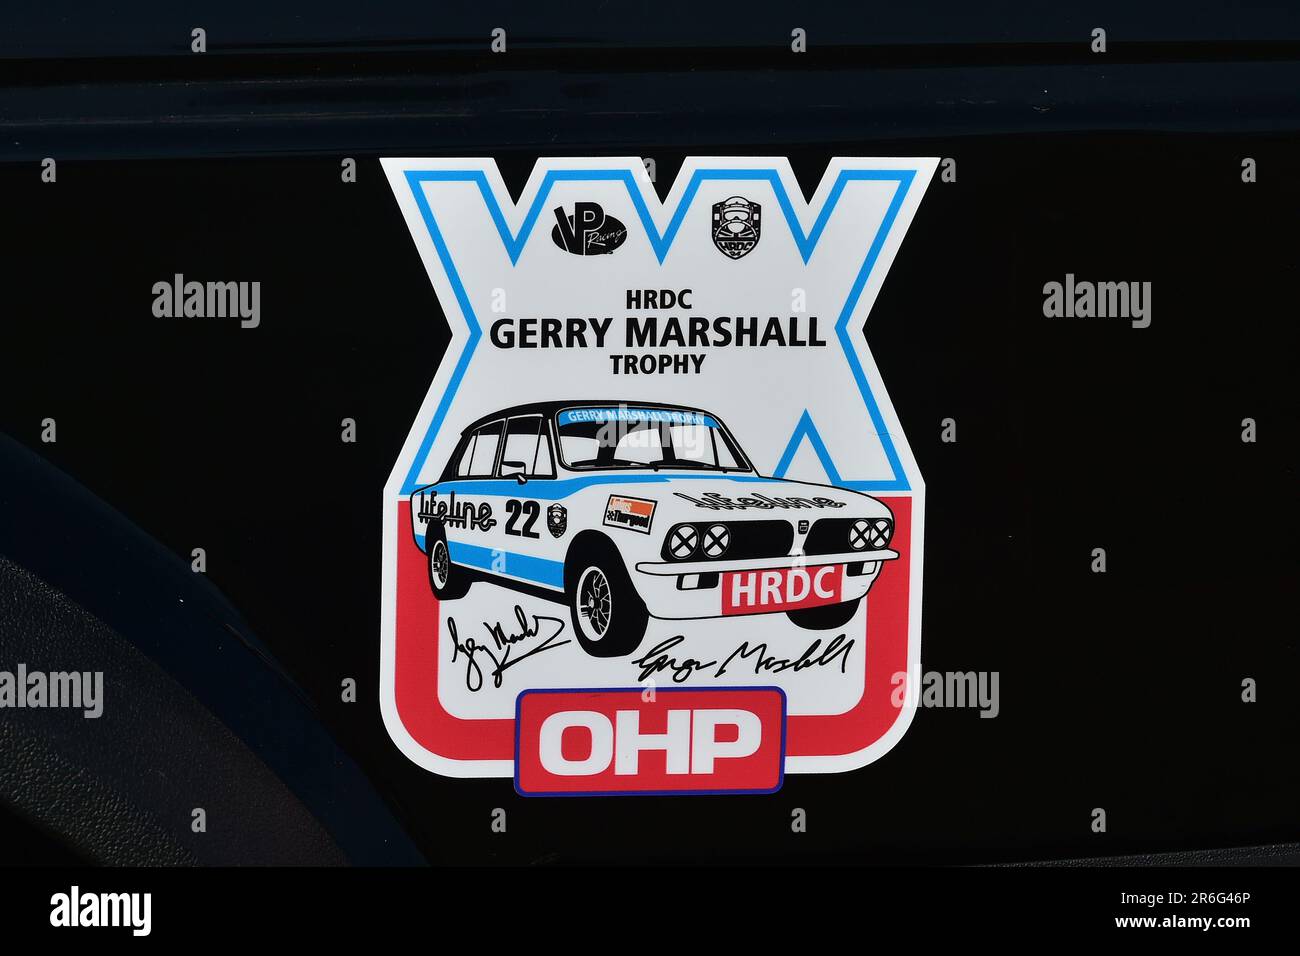 L’insigne, la série de trophées Gerry Marshall de DRHC, plus de 30 voitures sur la grille pour une course de quarante-cinq minutes à deux pilotes avec des voitures de tourisme d’avant les années 1980, sp Banque D'Images